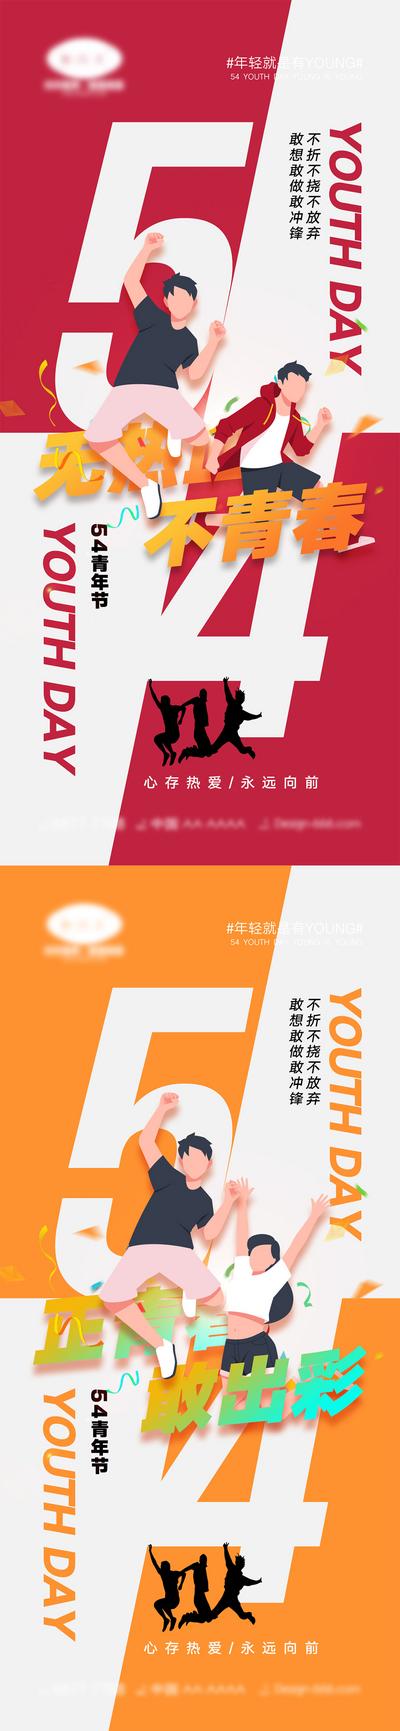 南门网 海报 插画 系列 54 青年节 奋斗 青春 滑板 剪影 公历节日 少年